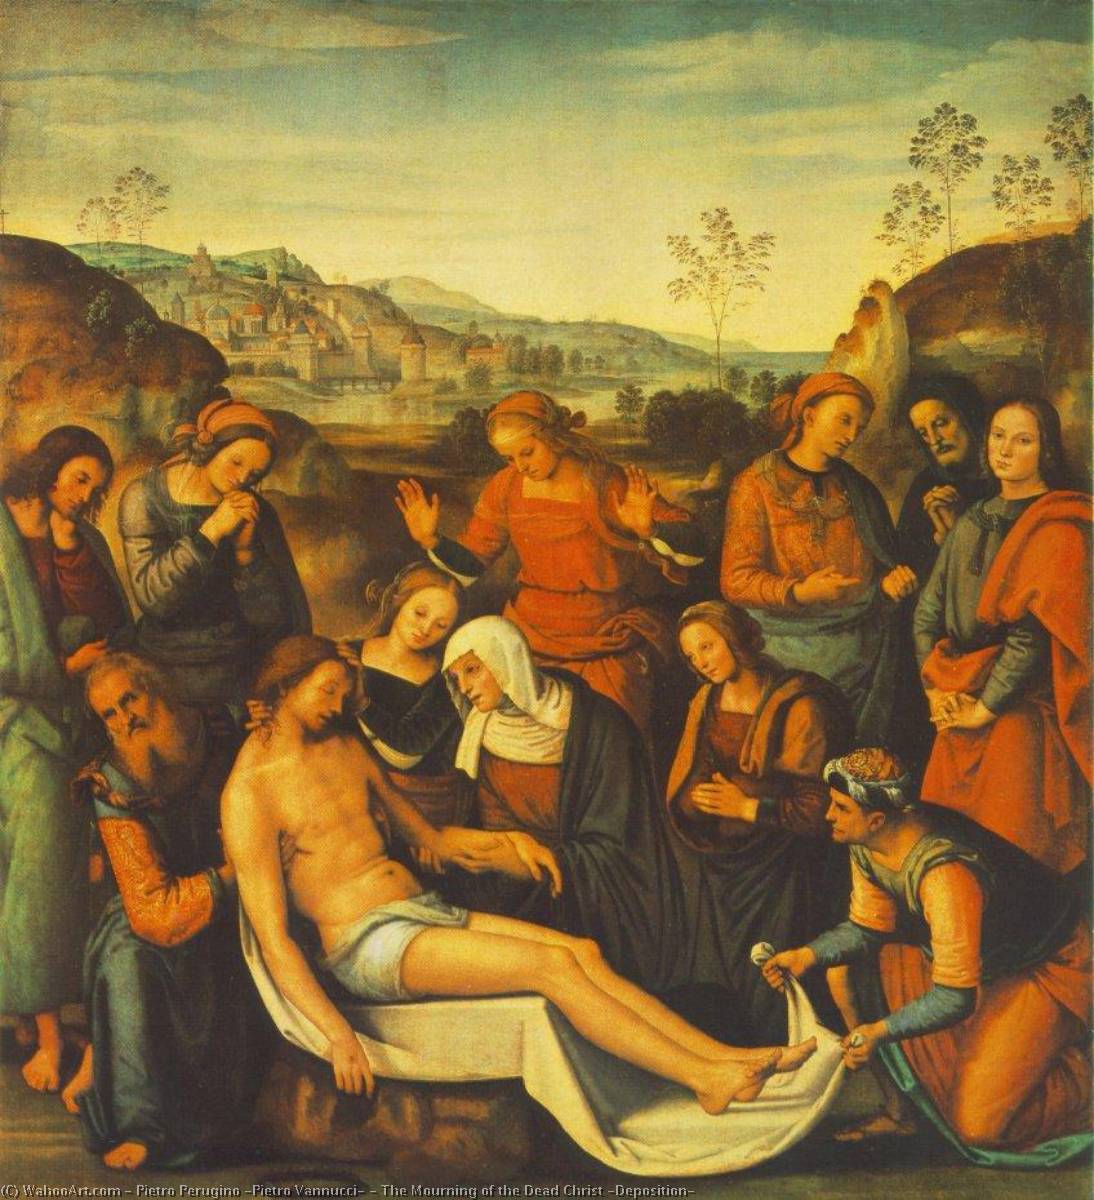 Compre Museu De Reproduções De Arte O Mourning of the Dead Christ (Deposition), 1495 por Pietro Perugino (Pietro Vannucci) (1446-1523) | ArtsDot.com